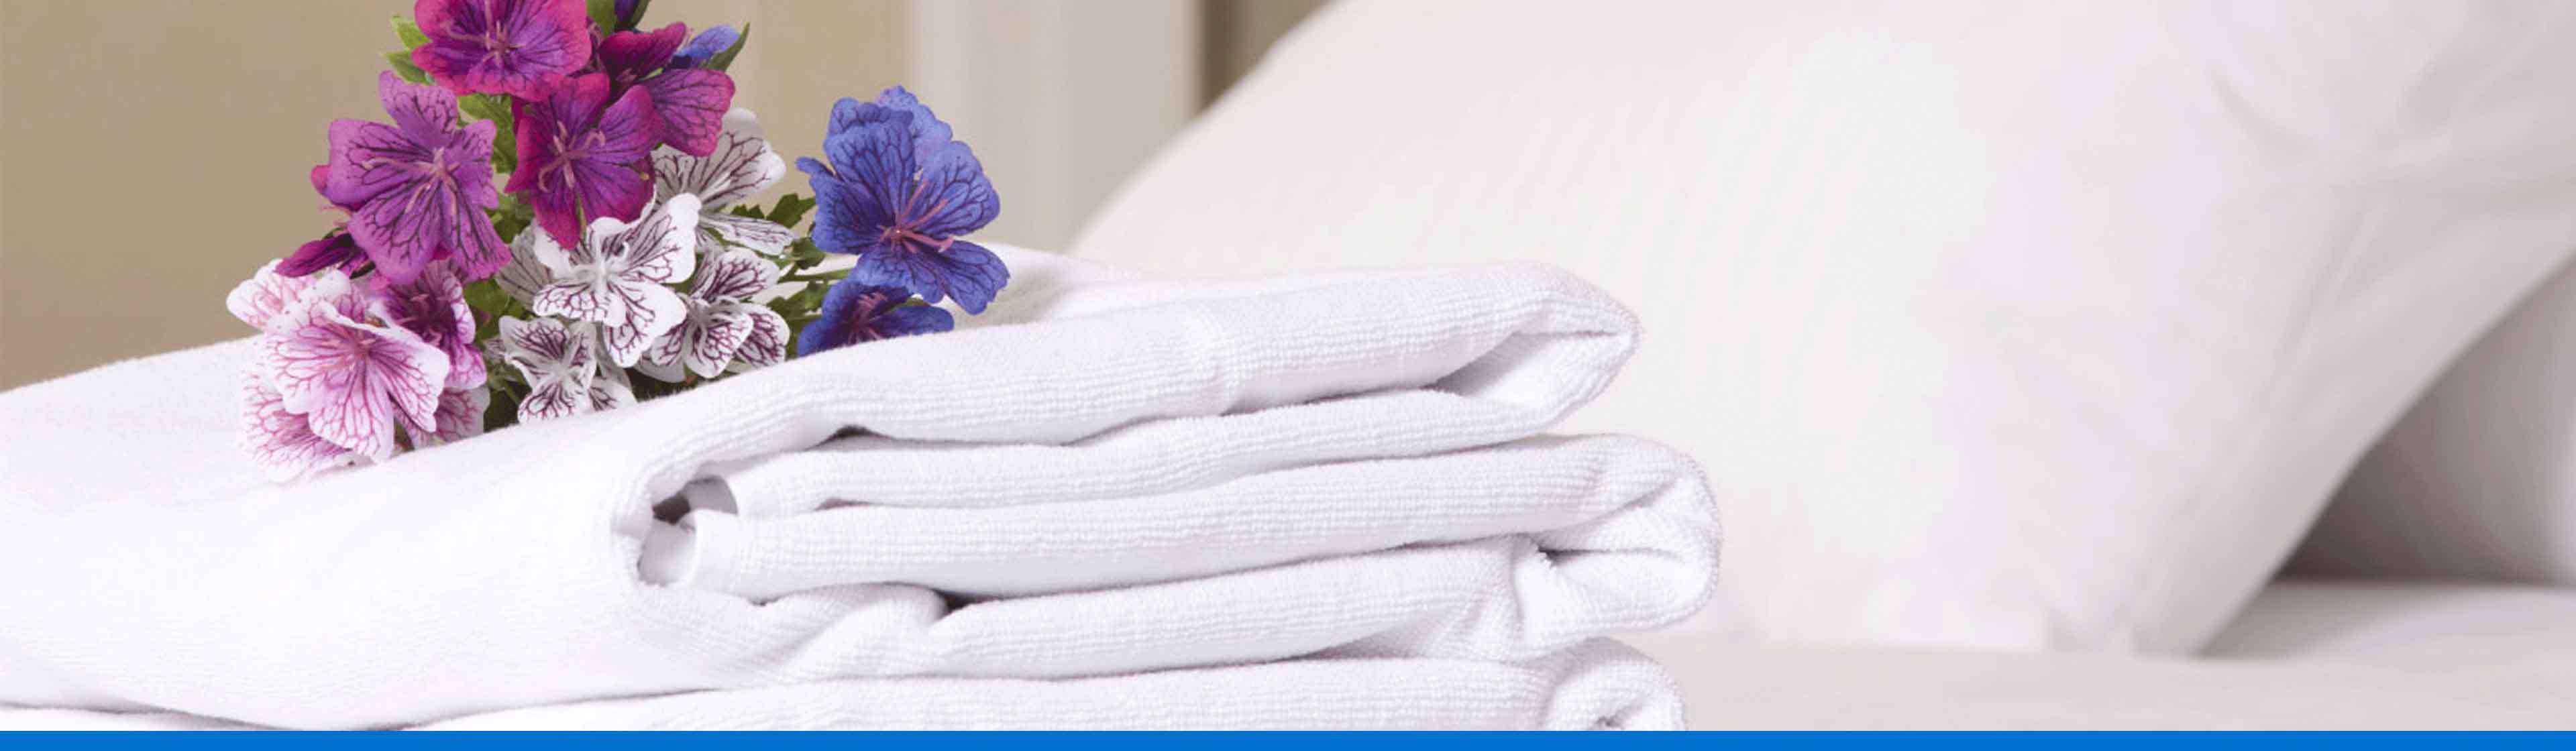 ¿Cómo cuidar las sábanas de tu casa?